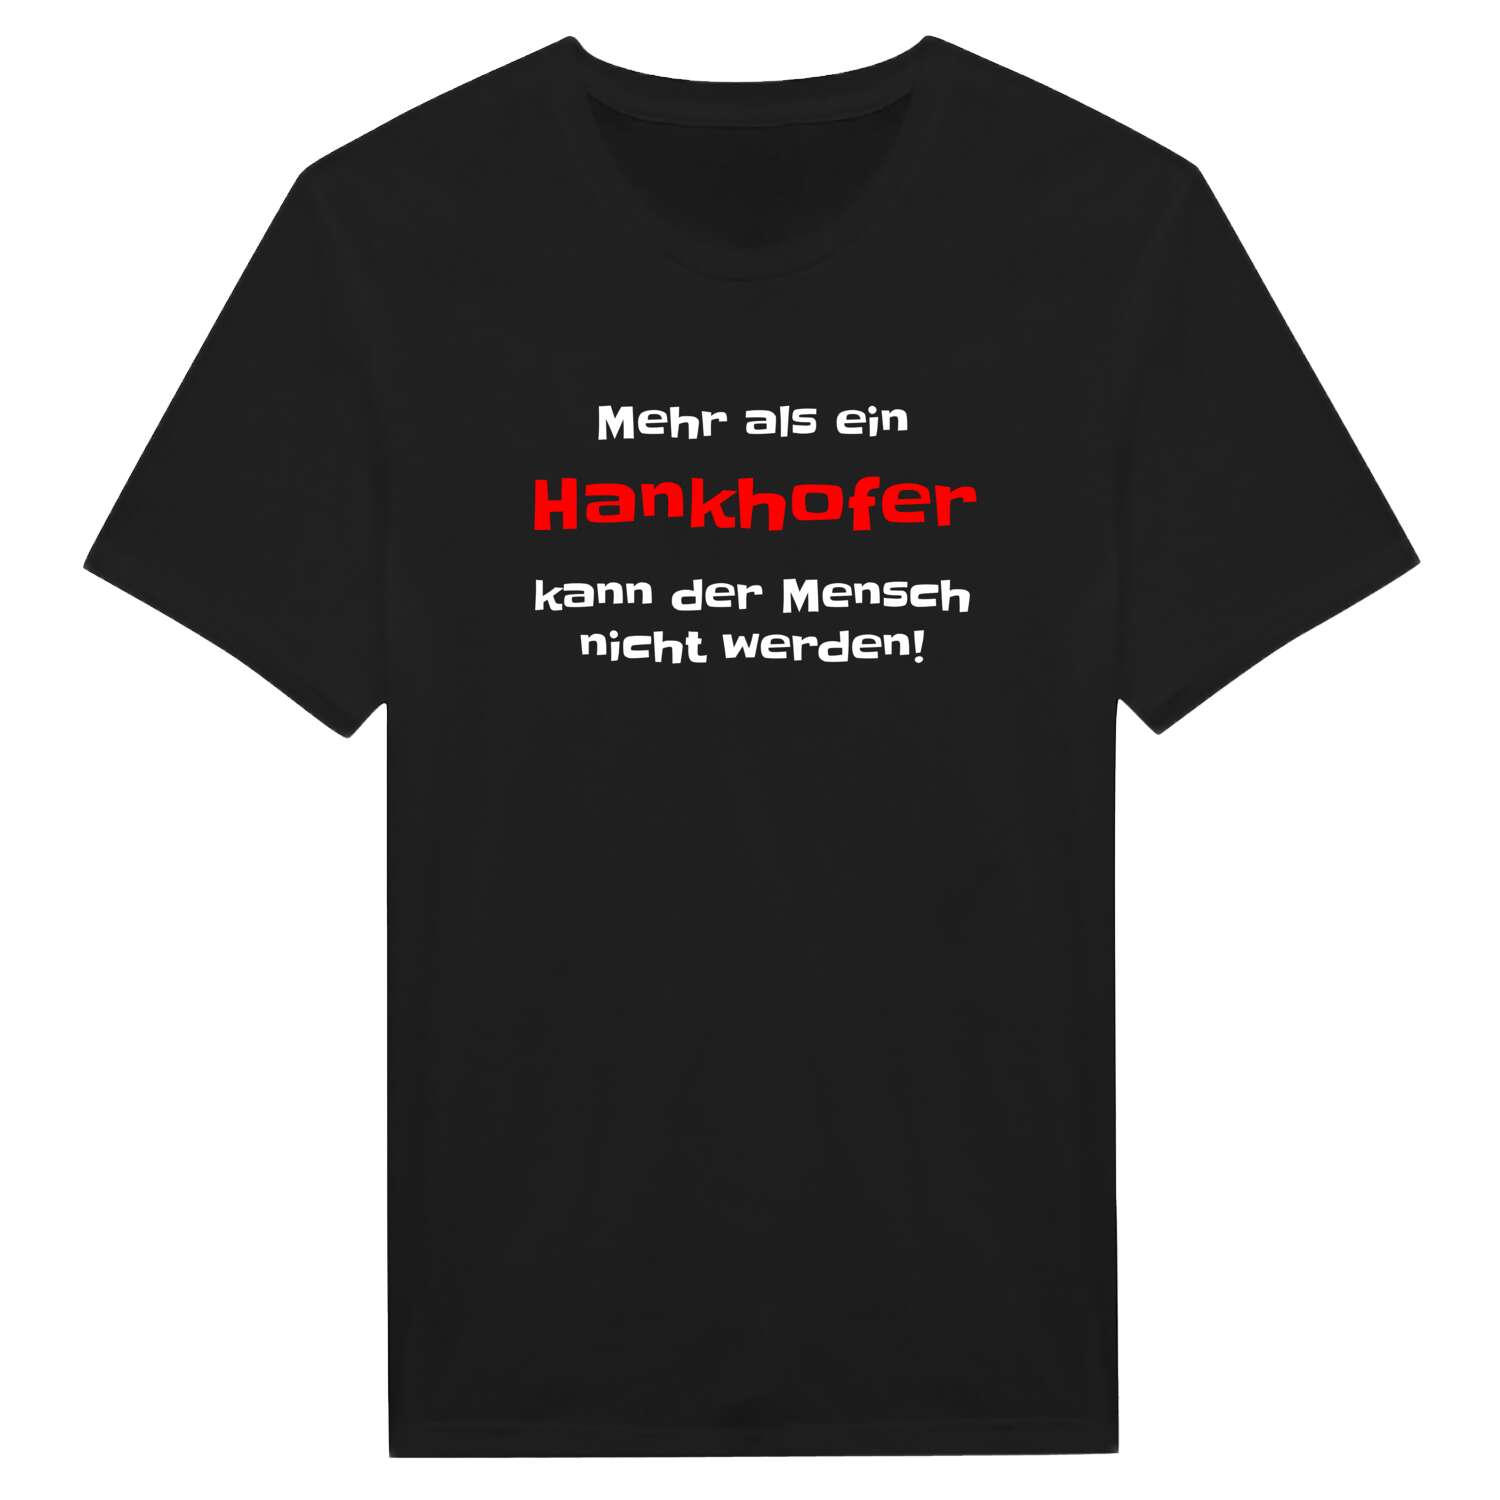 Hankhof T-Shirt »Mehr als ein«